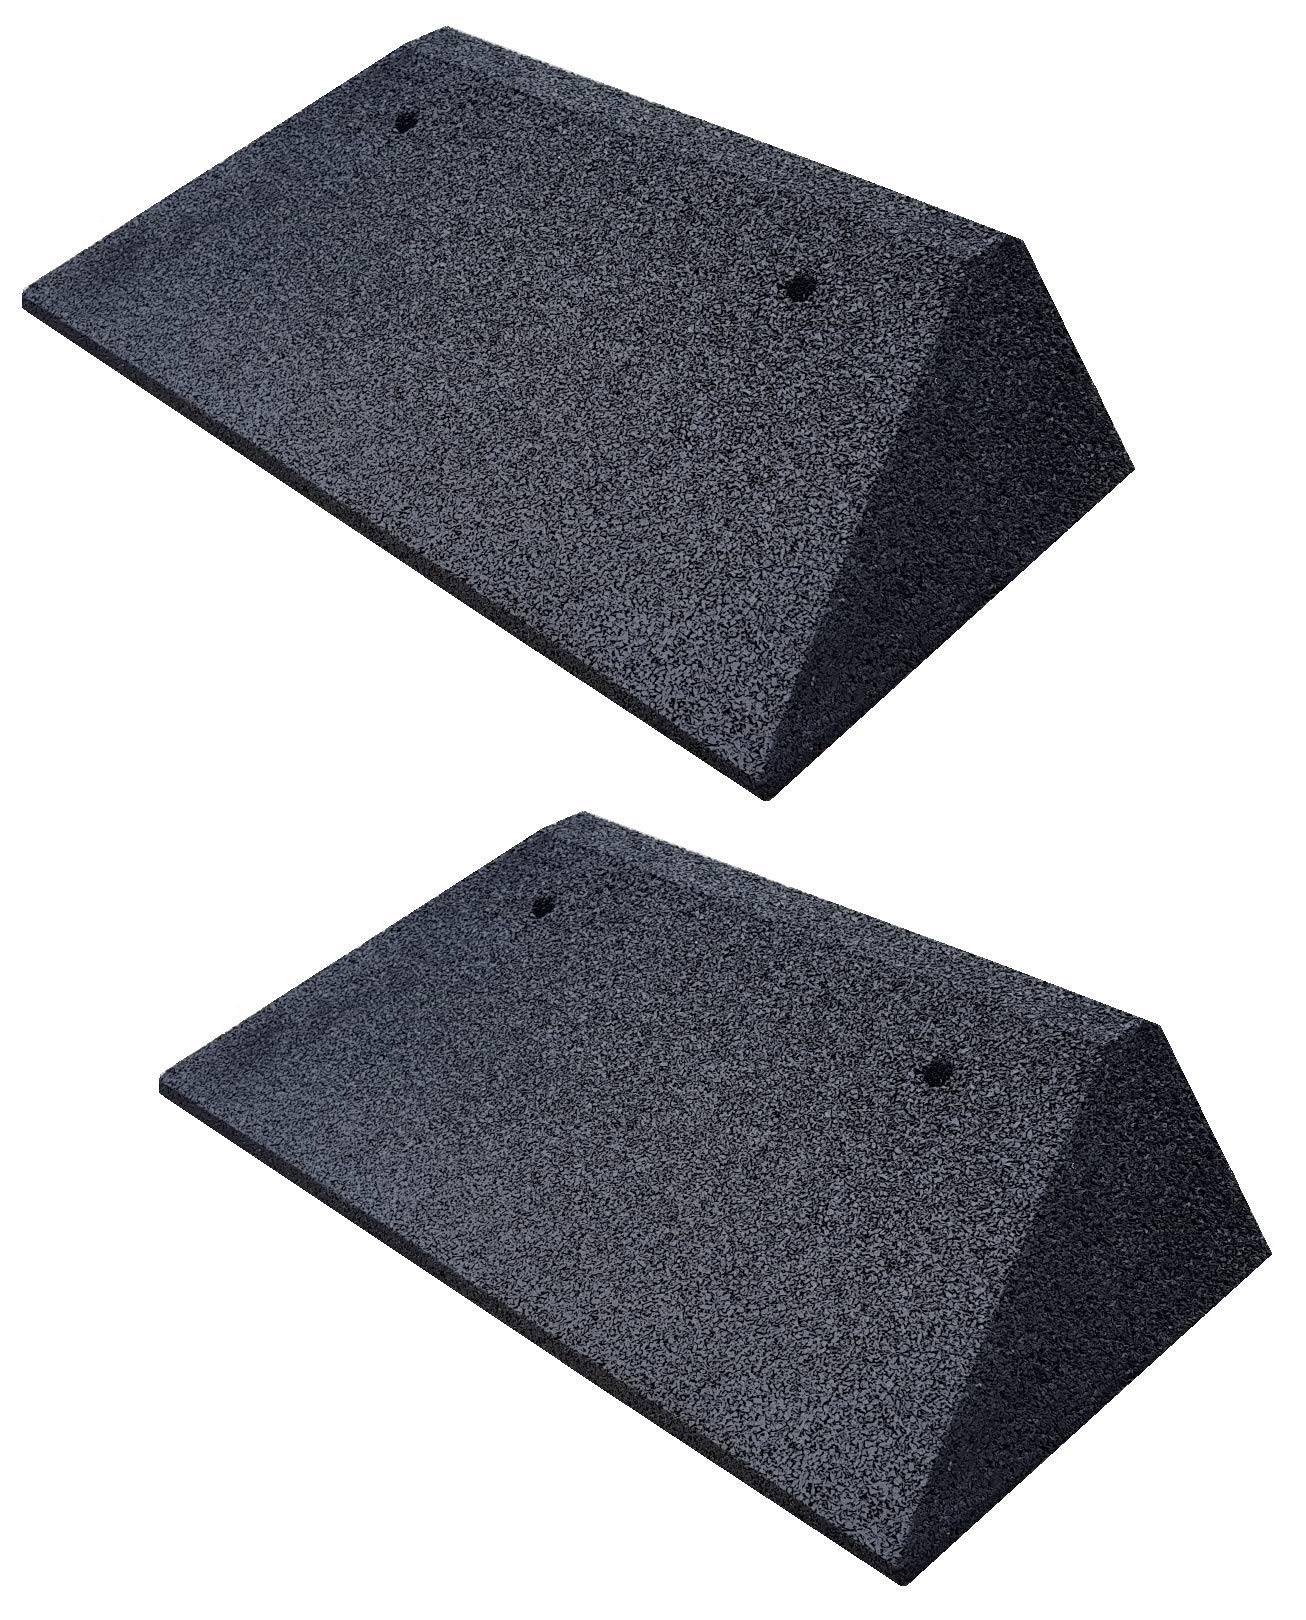 bepco Bordsteinkanten-Rampe-Set (2 Stück) + beidseitiger Schräge, LxBxH: 50 x 25 x 6 cm aus Gummi (schwarz) Auffahrrampe,Türschwellenrampe, mit eingelagerten Unterlegscheiben zur Befestigung